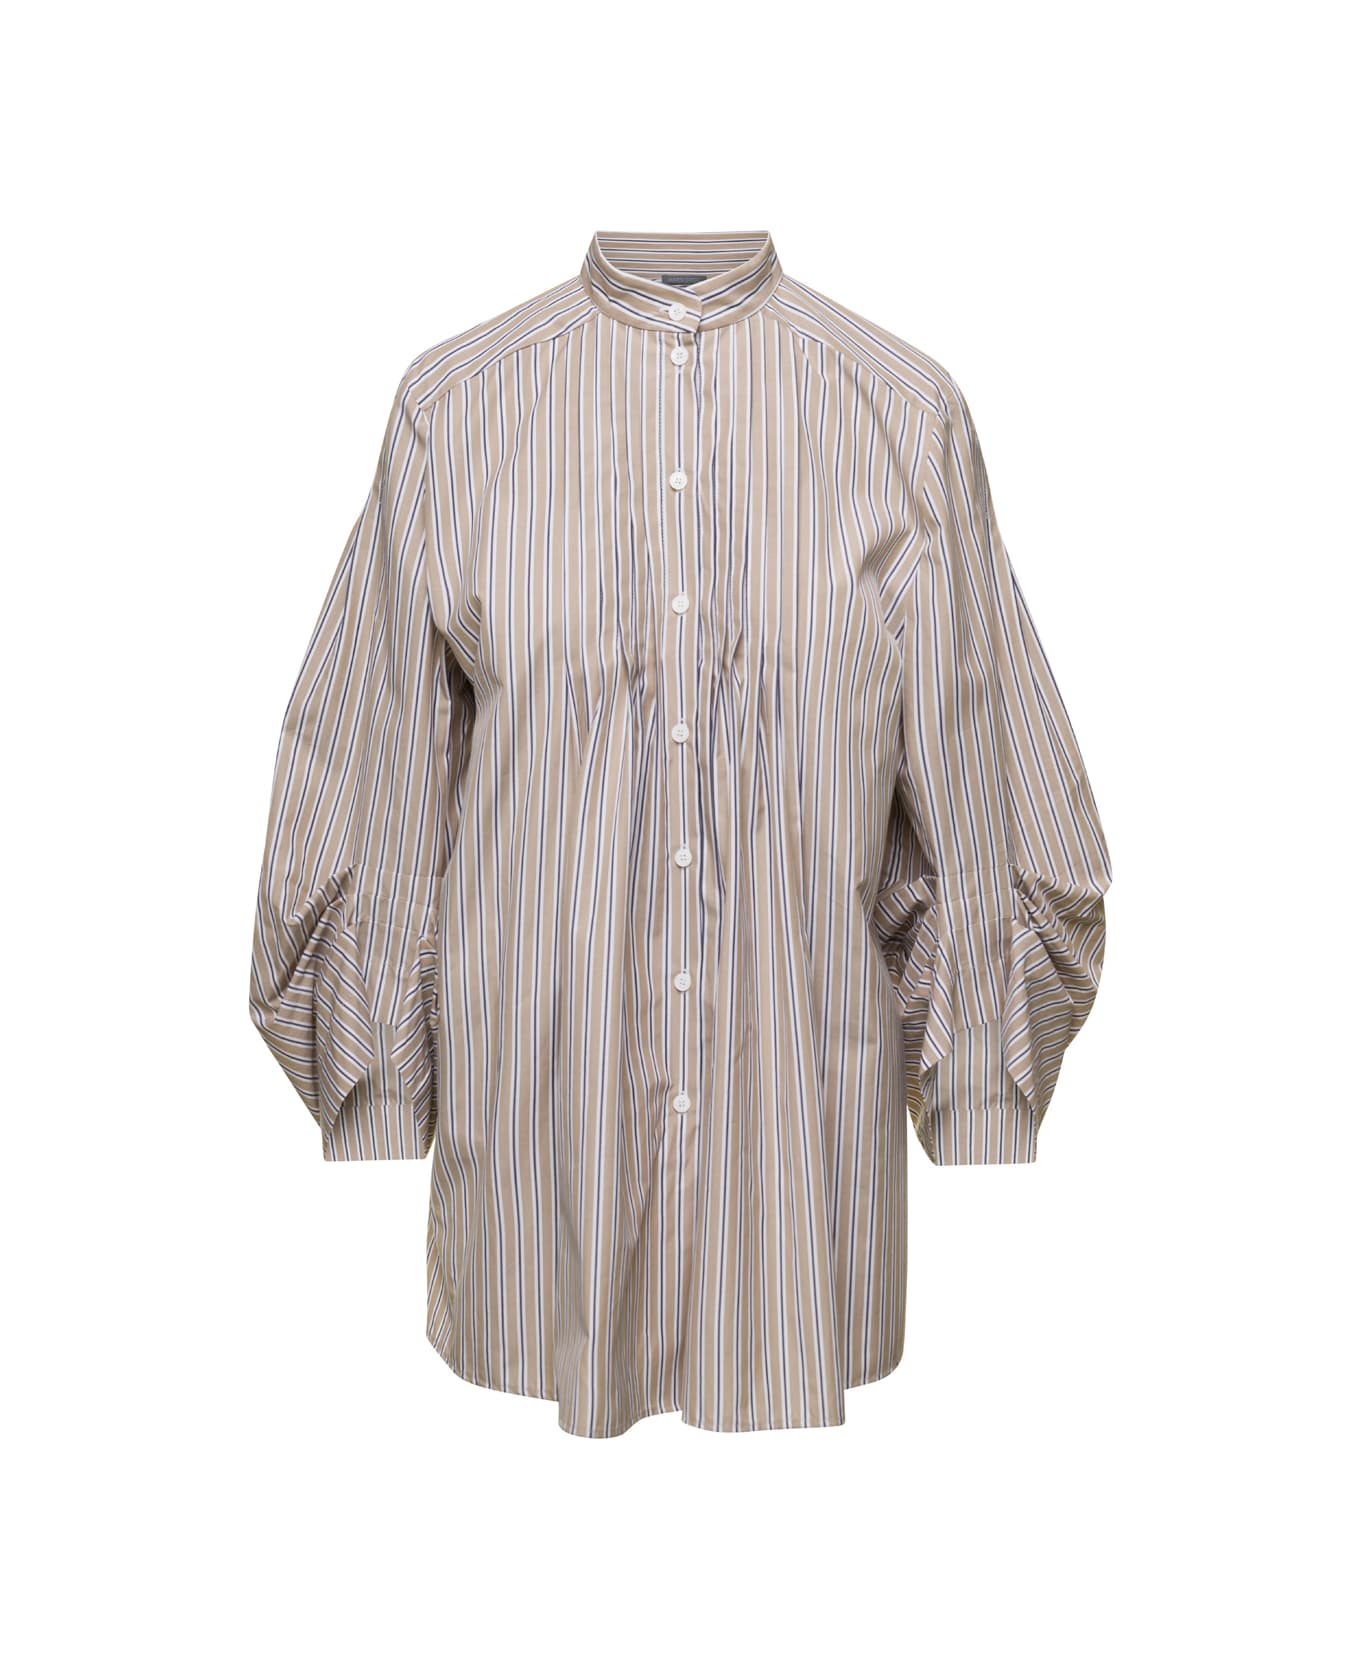 Alberta Ferretti Beige Striped Poplin Shirt In Cotton Woman - Beige シャツ